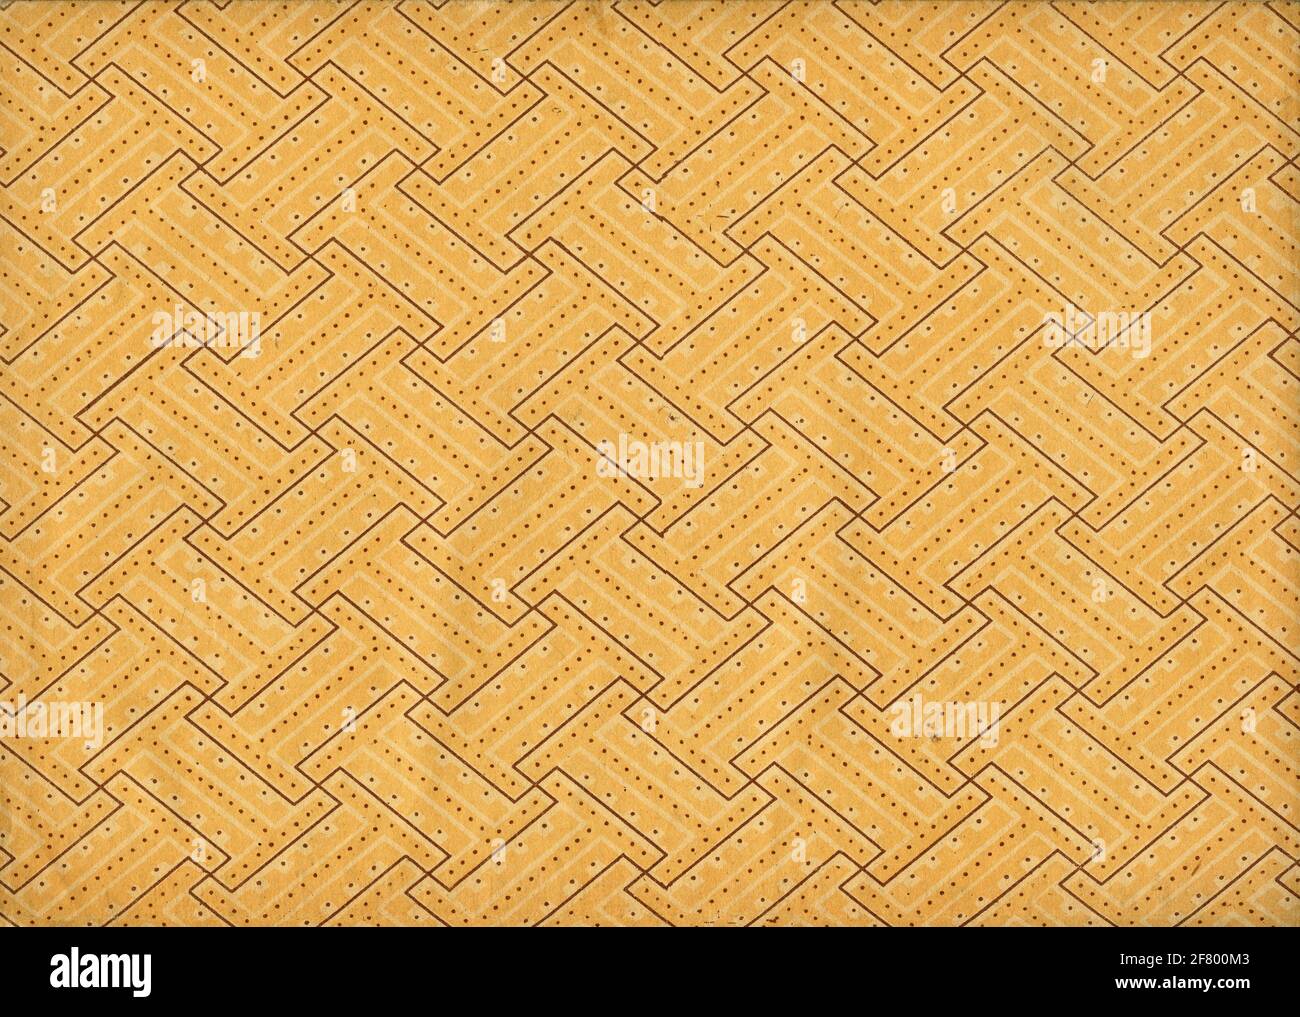 Vintage abstrakte gelbe Tapete Muster mit Fliesen oder Parkett Pflaster  Stockfotografie - Alamy